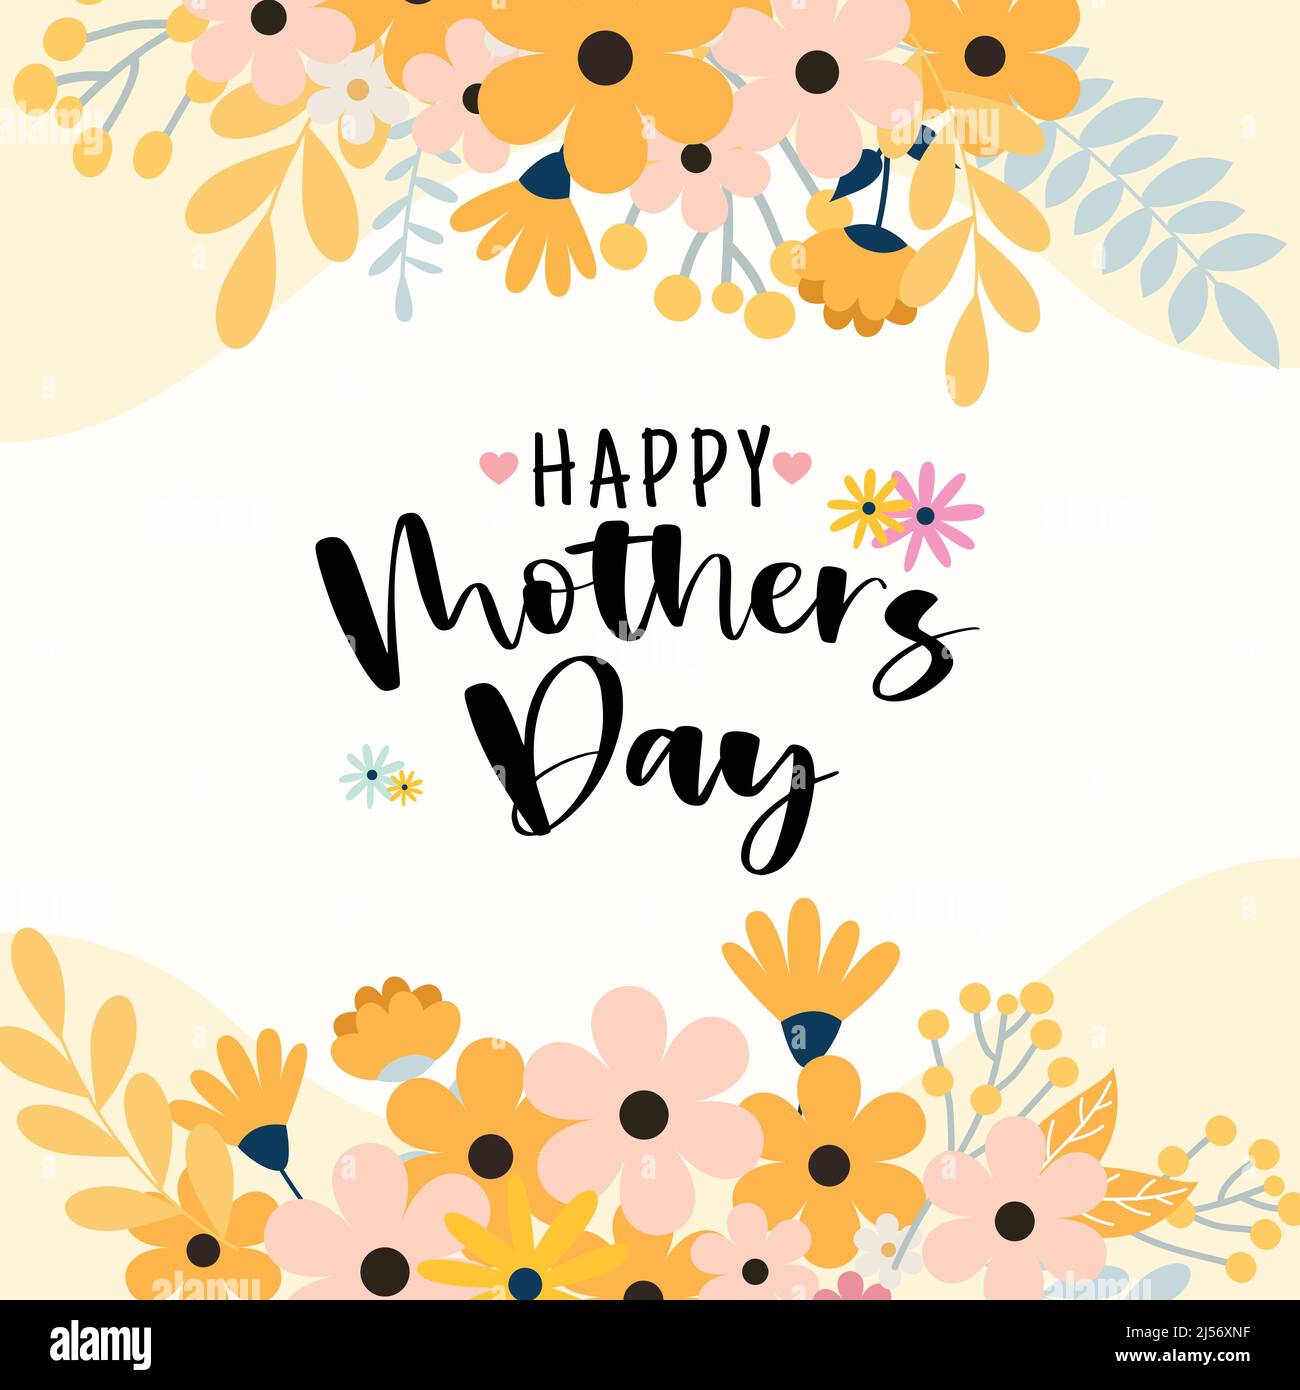 Glückwunschkarte mit Blumenmuster zum Muttertag im flachen Design Stock Vektor